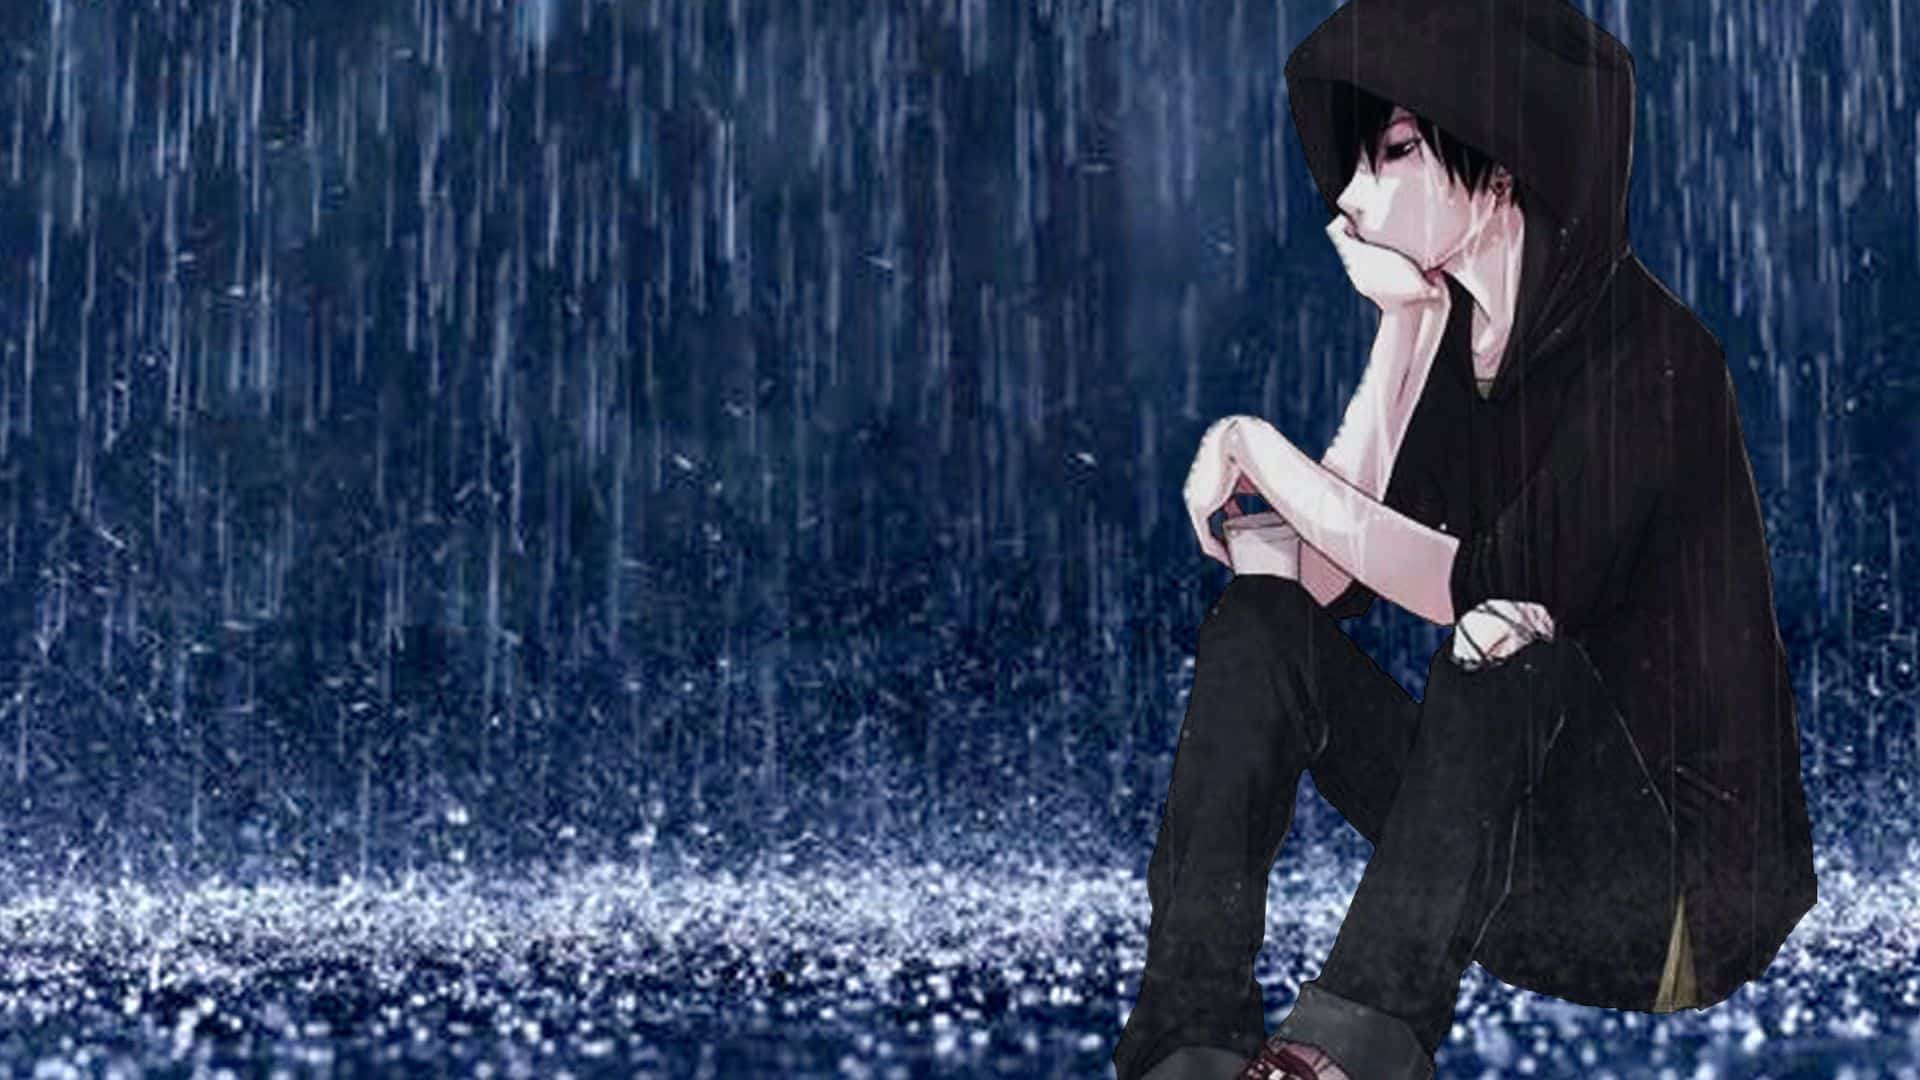 ảnh hoạt hình buồn đẹp nhất chàng trai cô đơn ngắm mưa